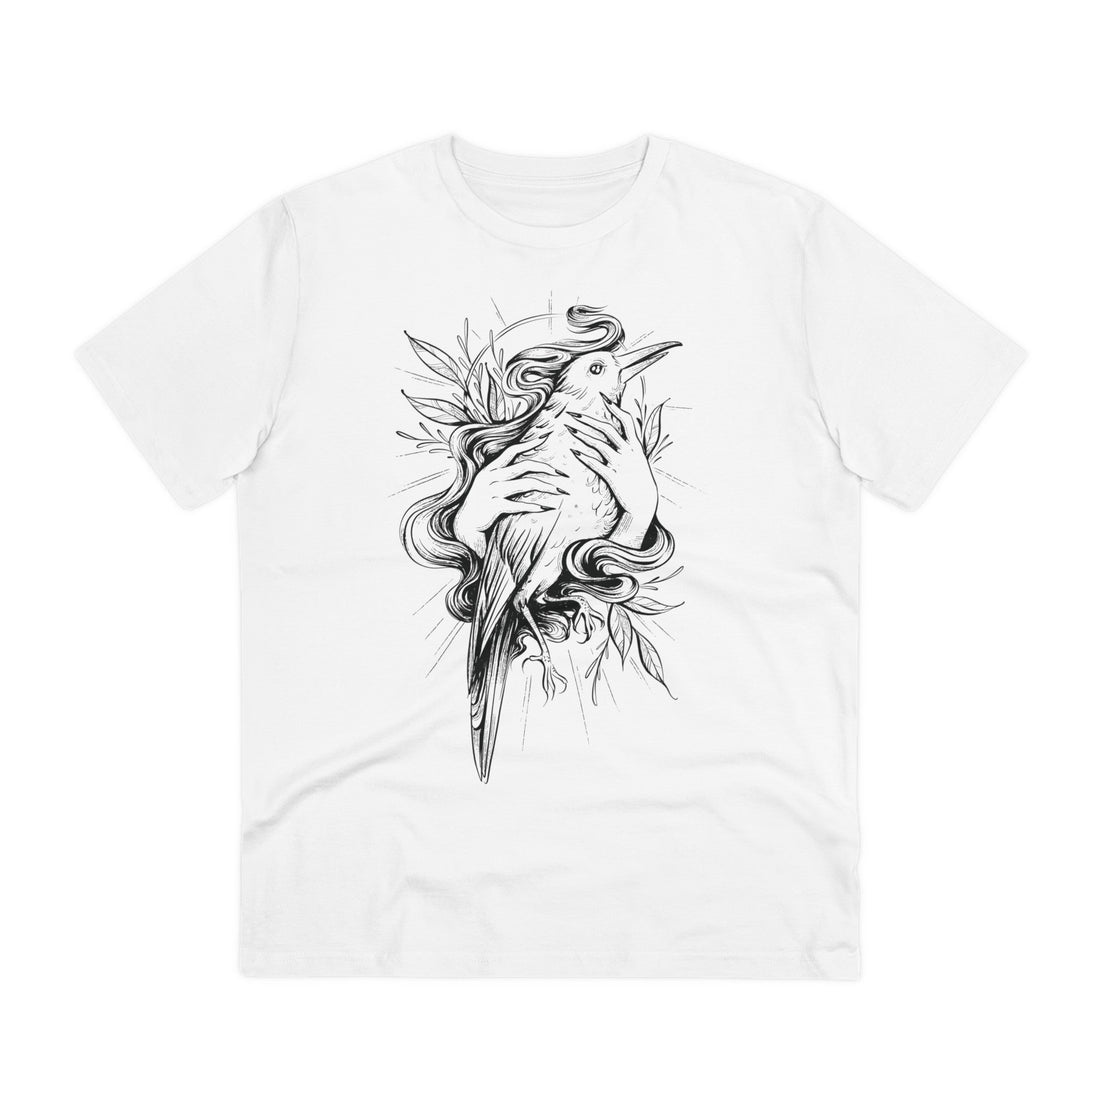 Printify T-Shirt White / 2XS Bird in Female Hands - Hand Drawn Dark Gothic - Front Design